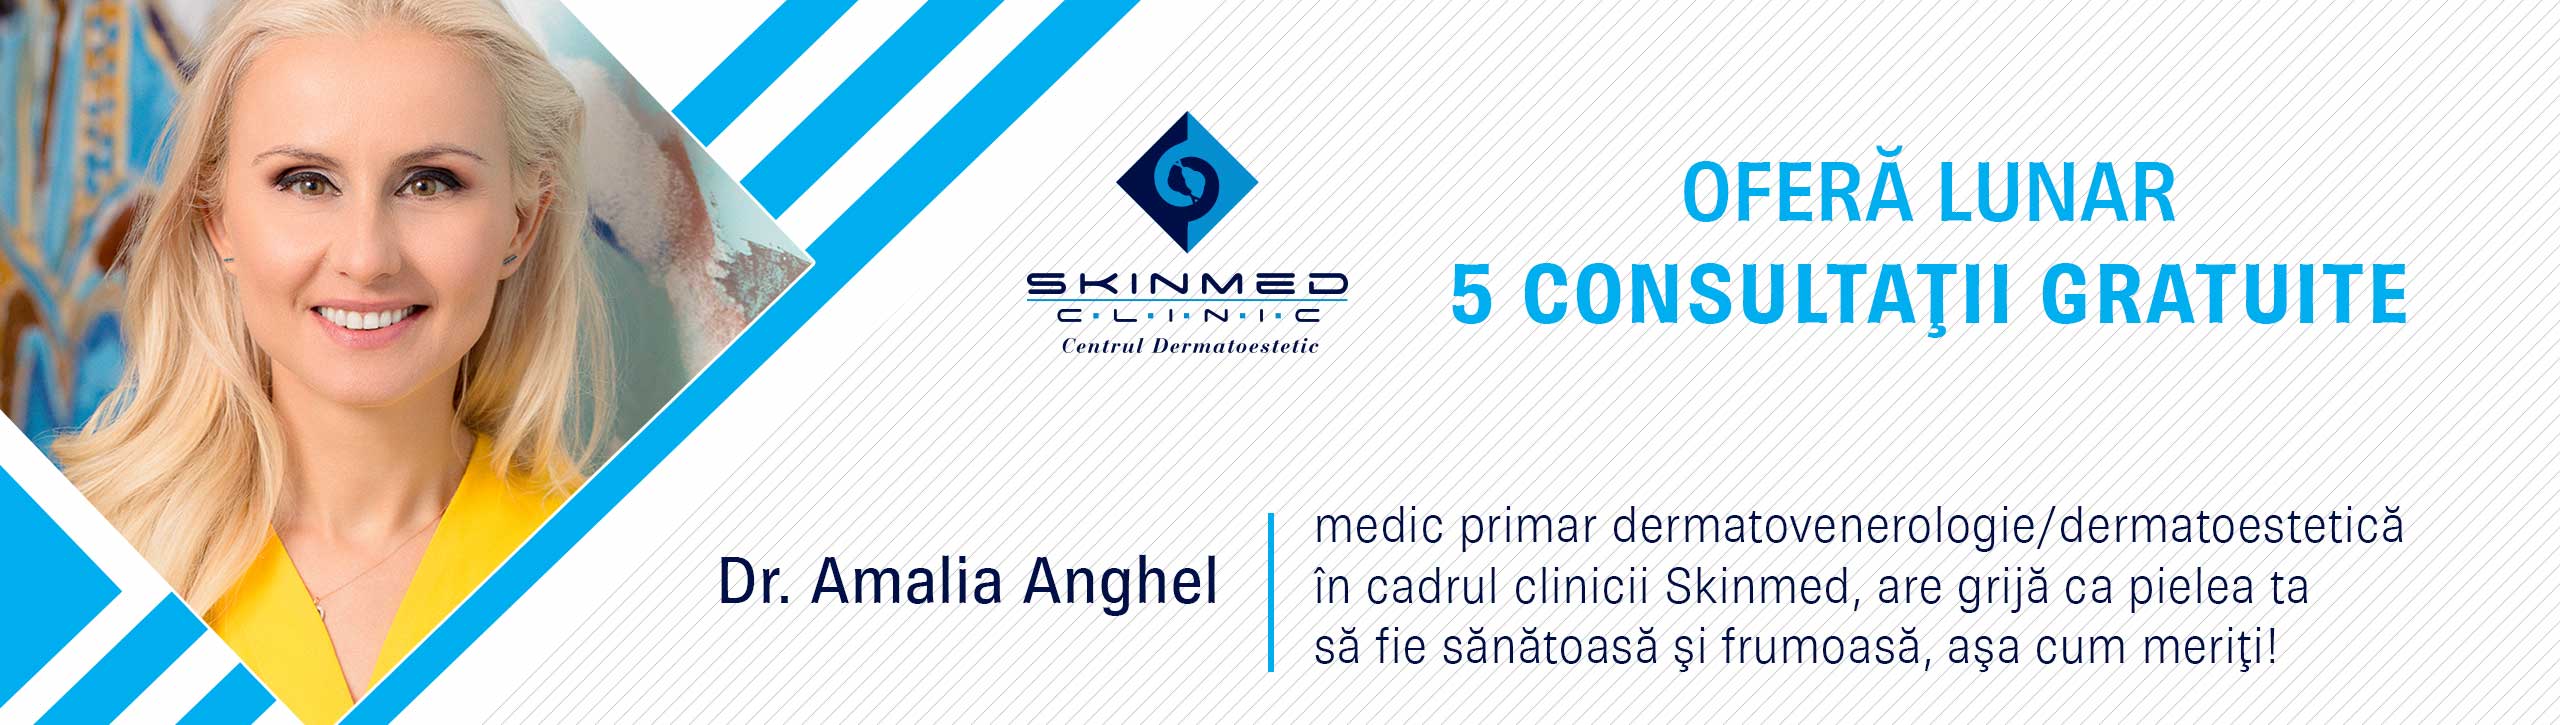 oferta 5 consultatii gratuite - skinmed clinic bucuresti